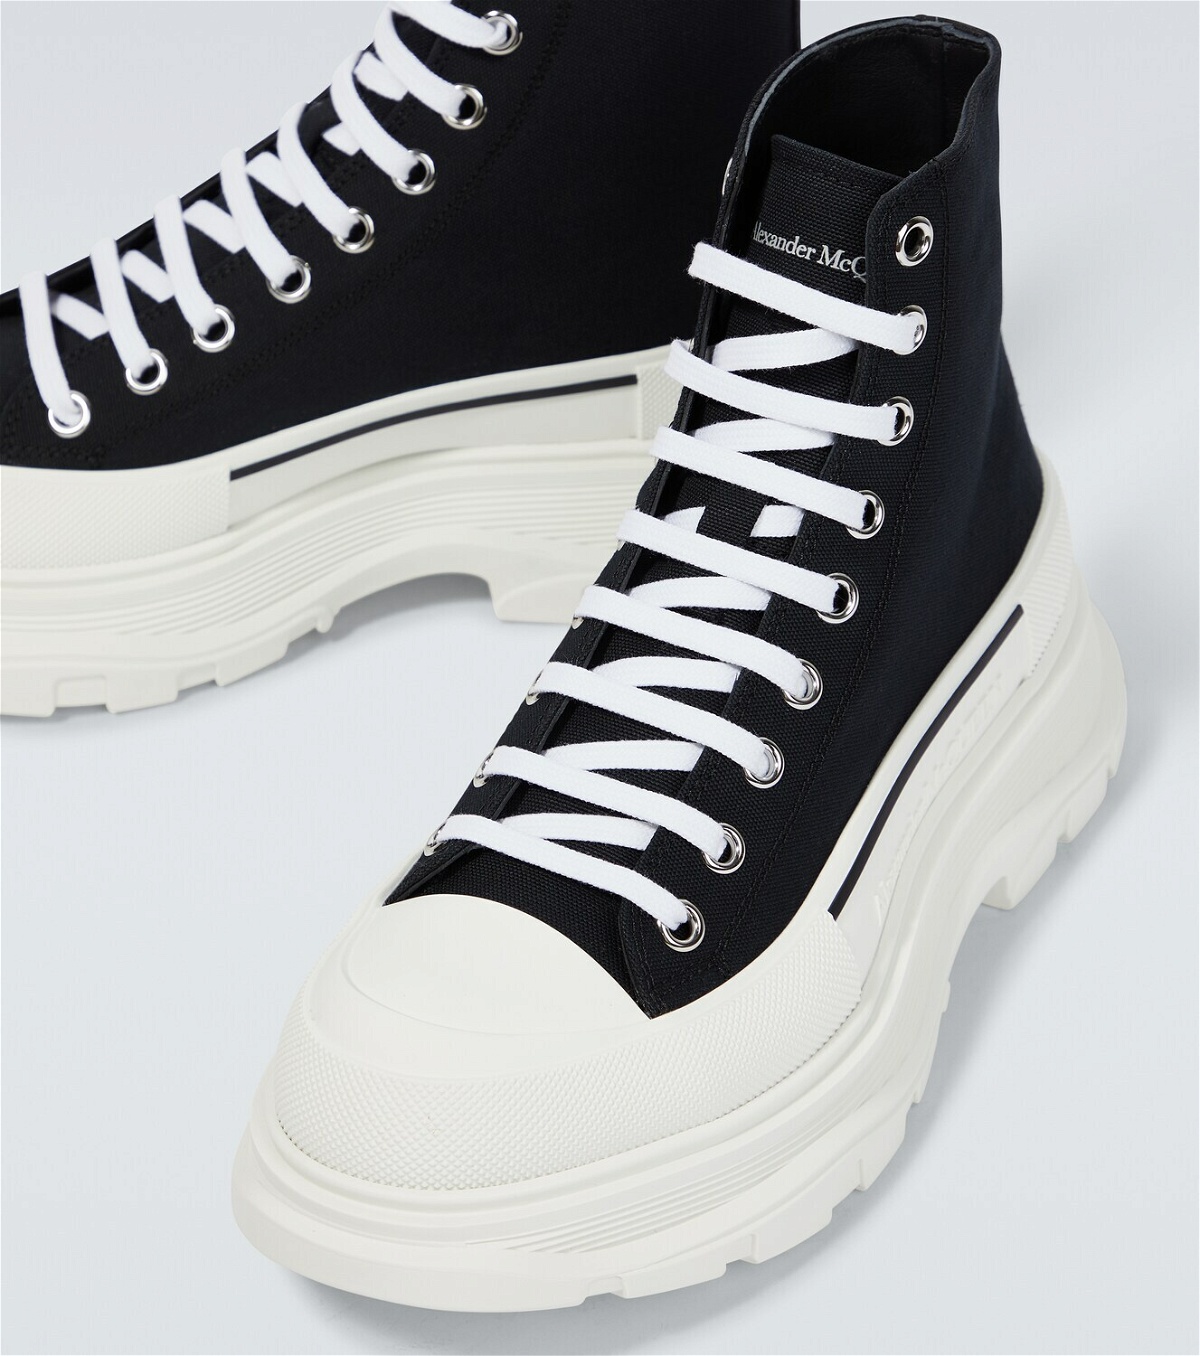 Alexander McQueen Sneakers with logo, IetpShops, Alexander McQueen Mens  Tread Slick Canvas Low Top Sneakers in White